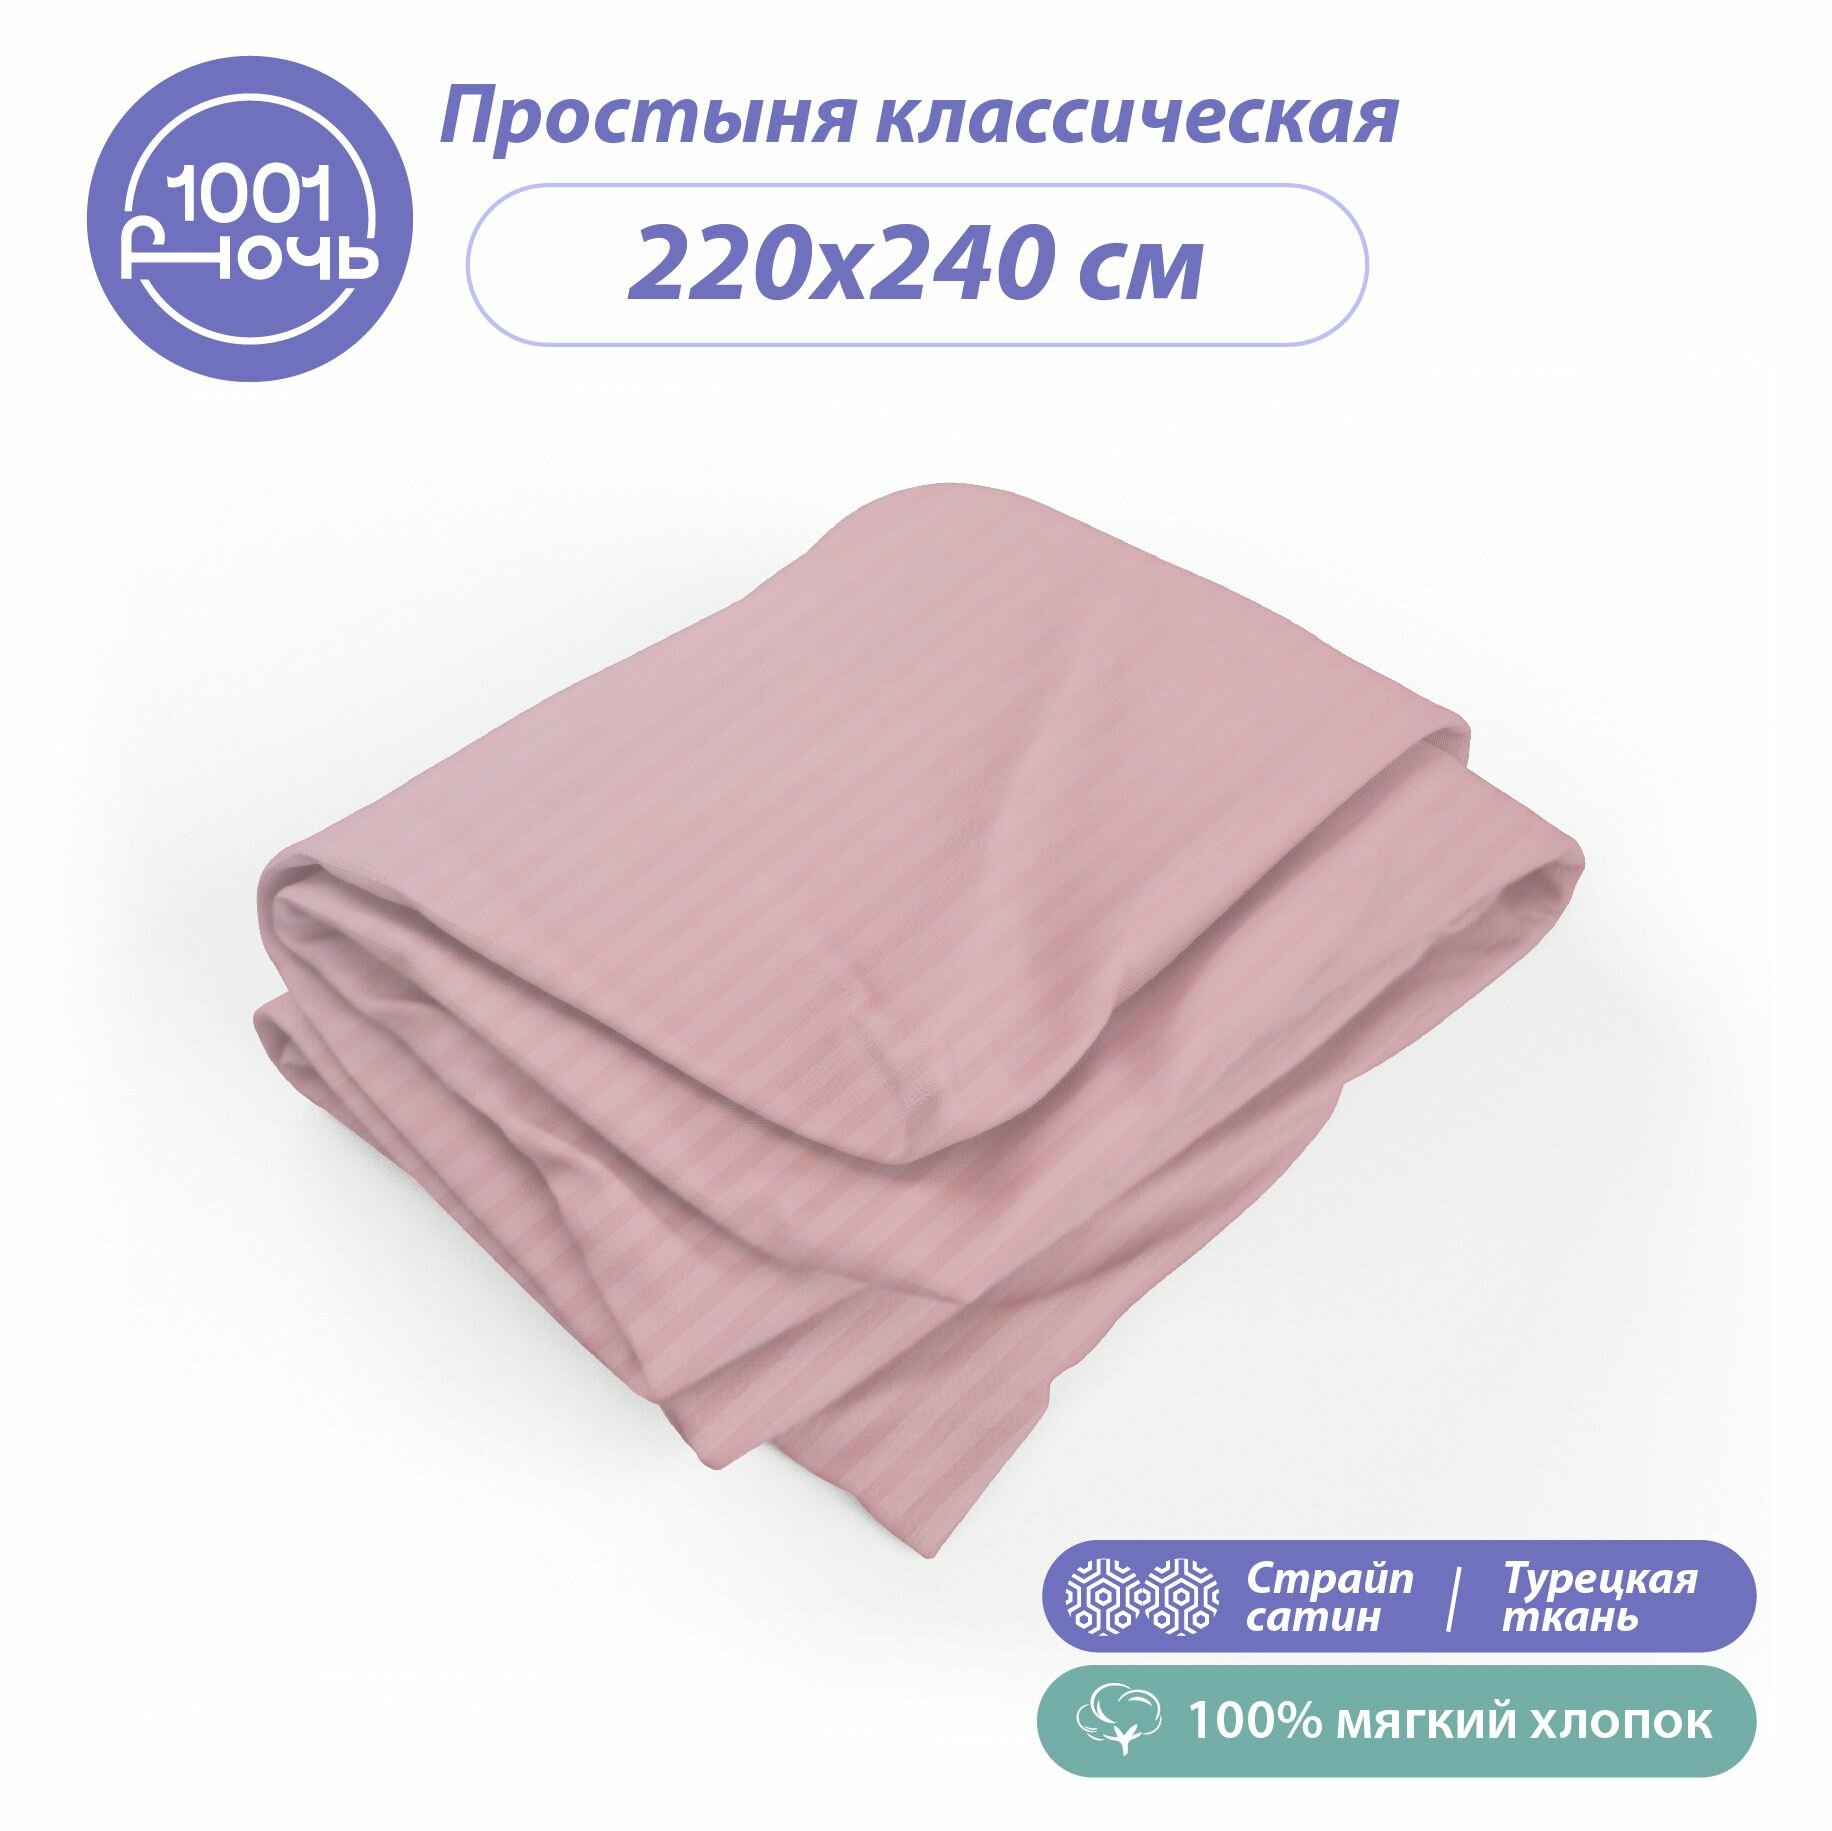 Простыня стандартная страйп-сатин розовый 220х240 см, 2-спальная / евро, 100% турецкий хлопок, "1001 ночь"